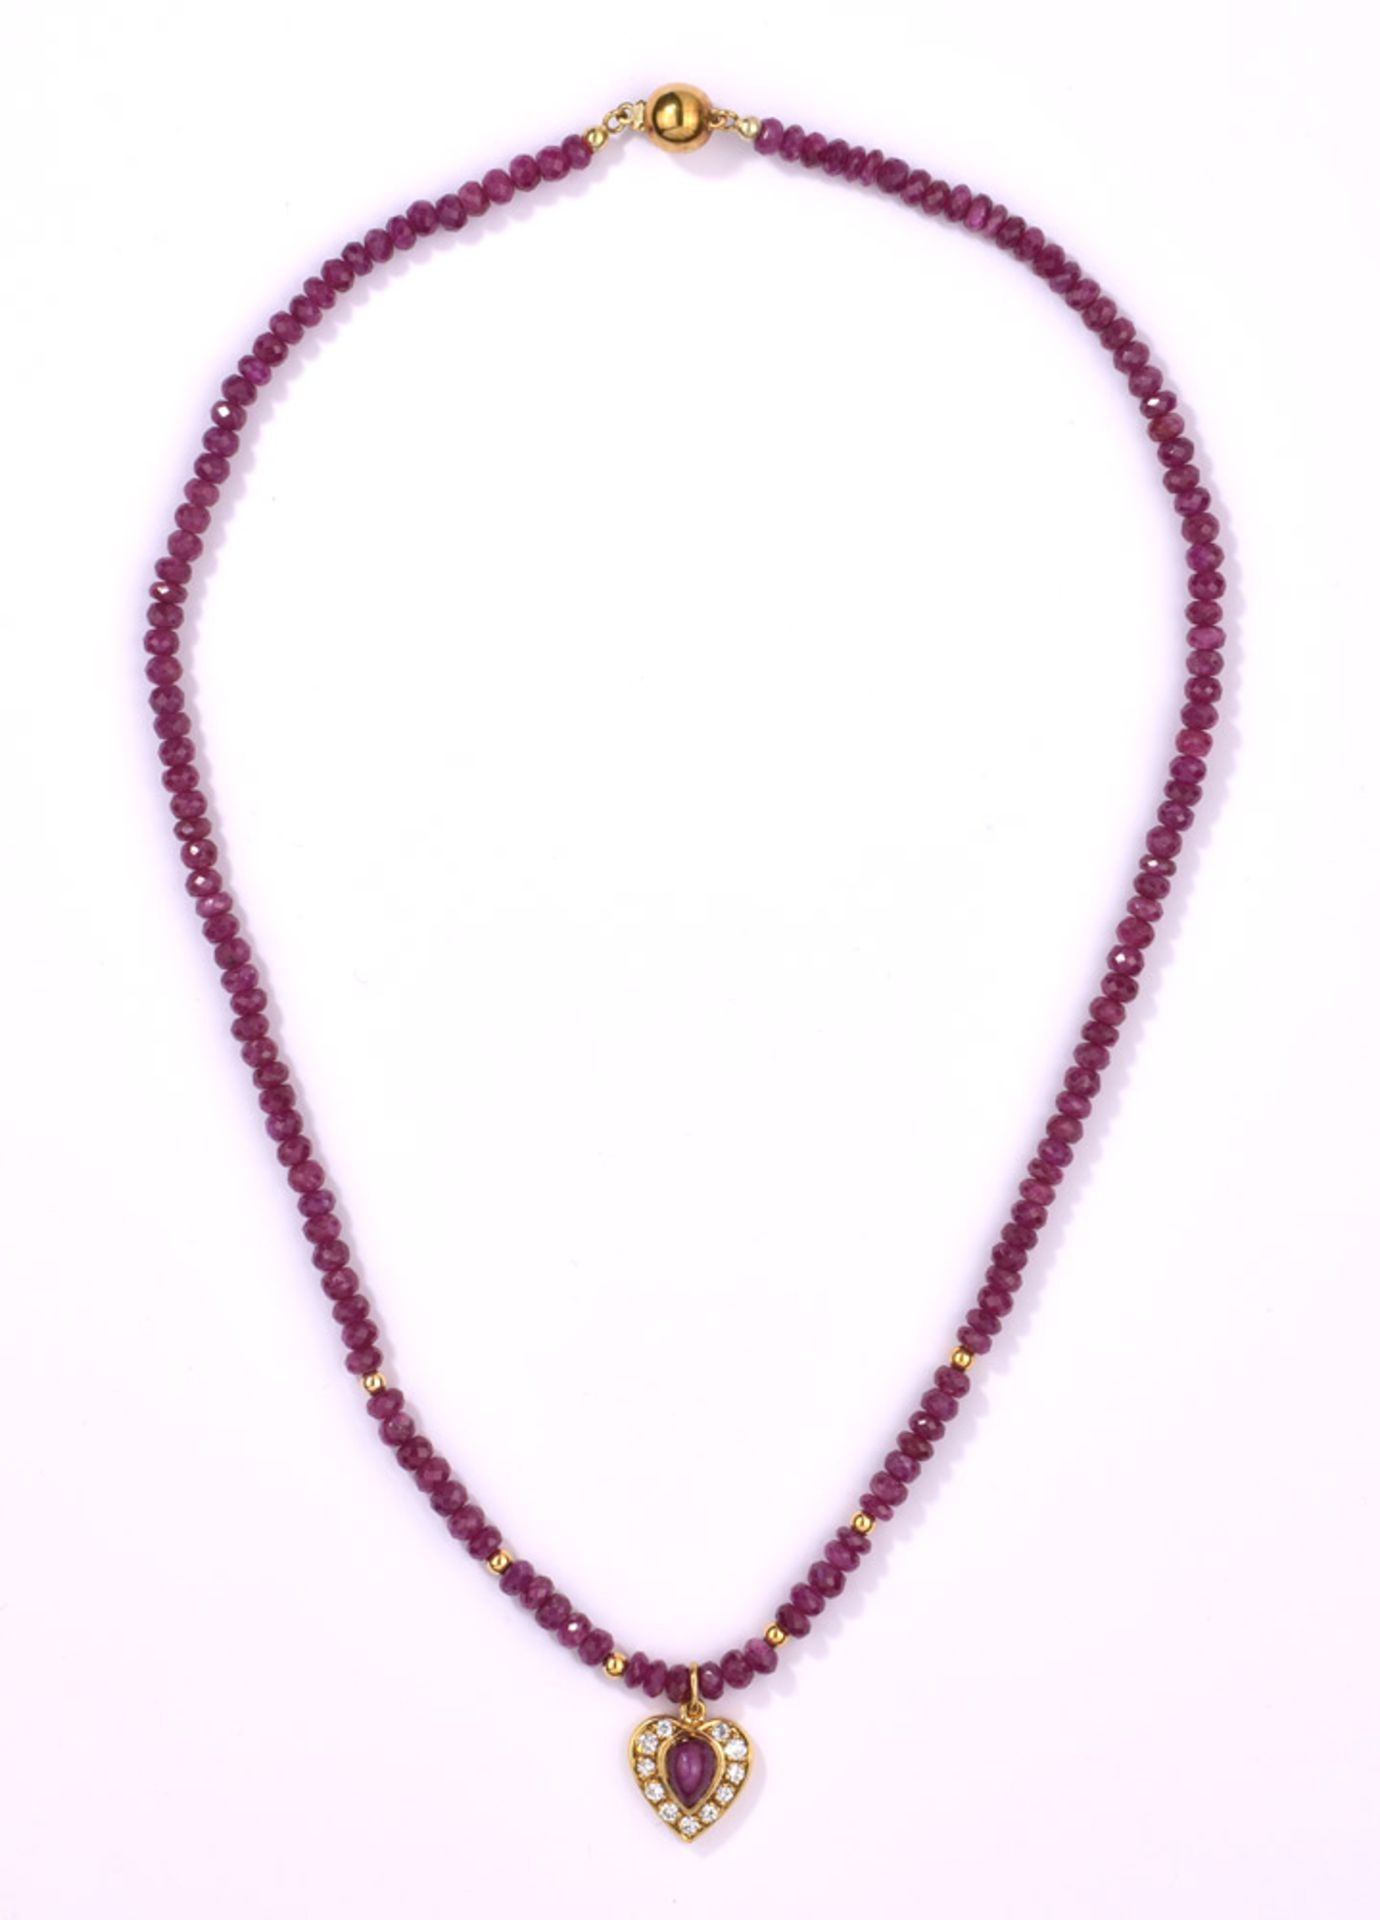 Rubinkette mit Herzanhänger585- Gelbgoldschließe und -anhänger. 11 Brillanten. L 46 cm.